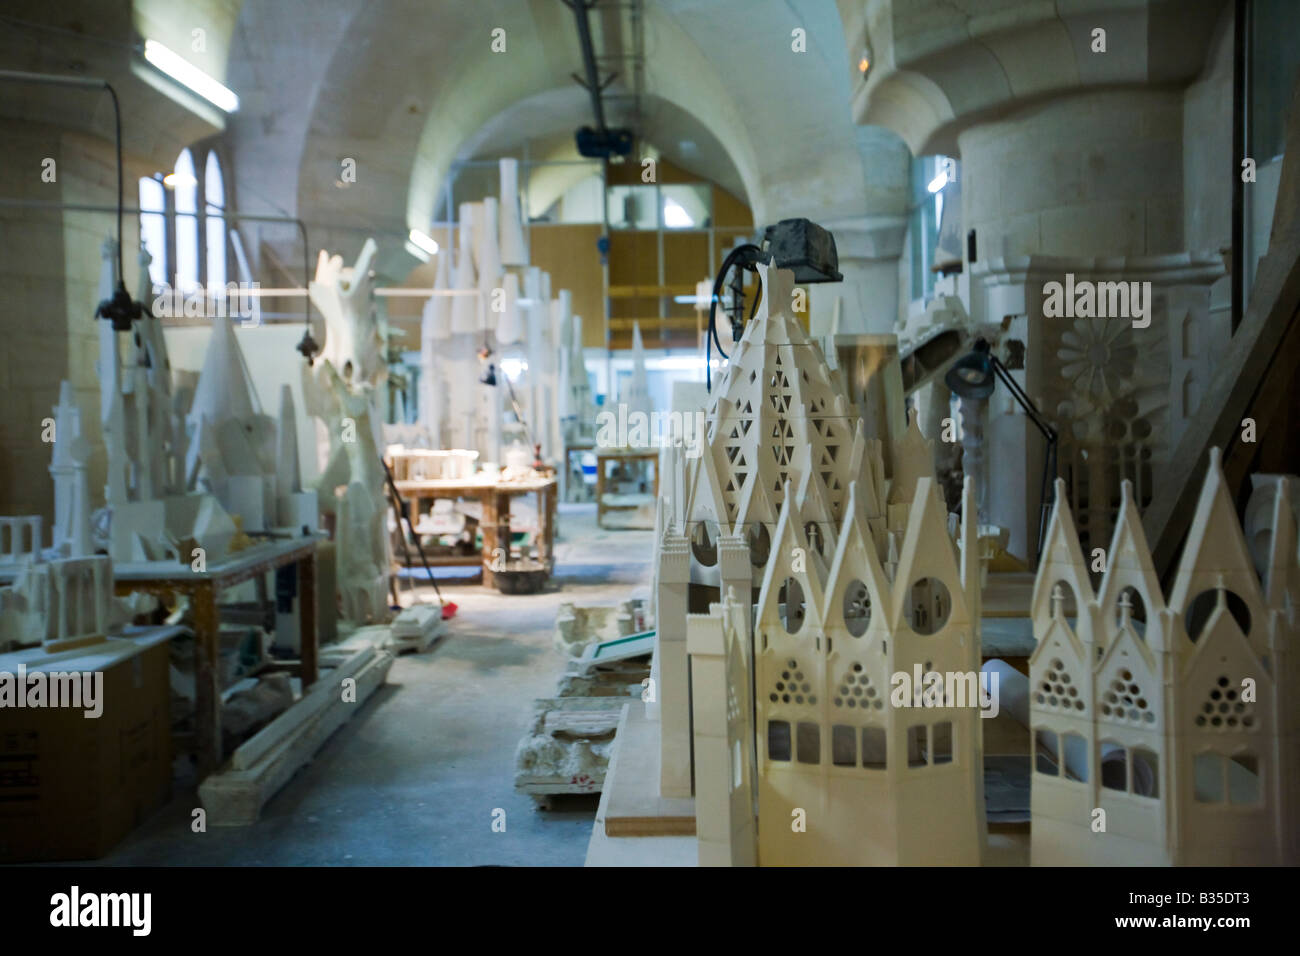 Espagne Barcelone bâtiment échelle modèle dans l'atelier Musée de l'église Sagrada Familia de l'architecte Antoni Gaudi conçu Banque D'Images